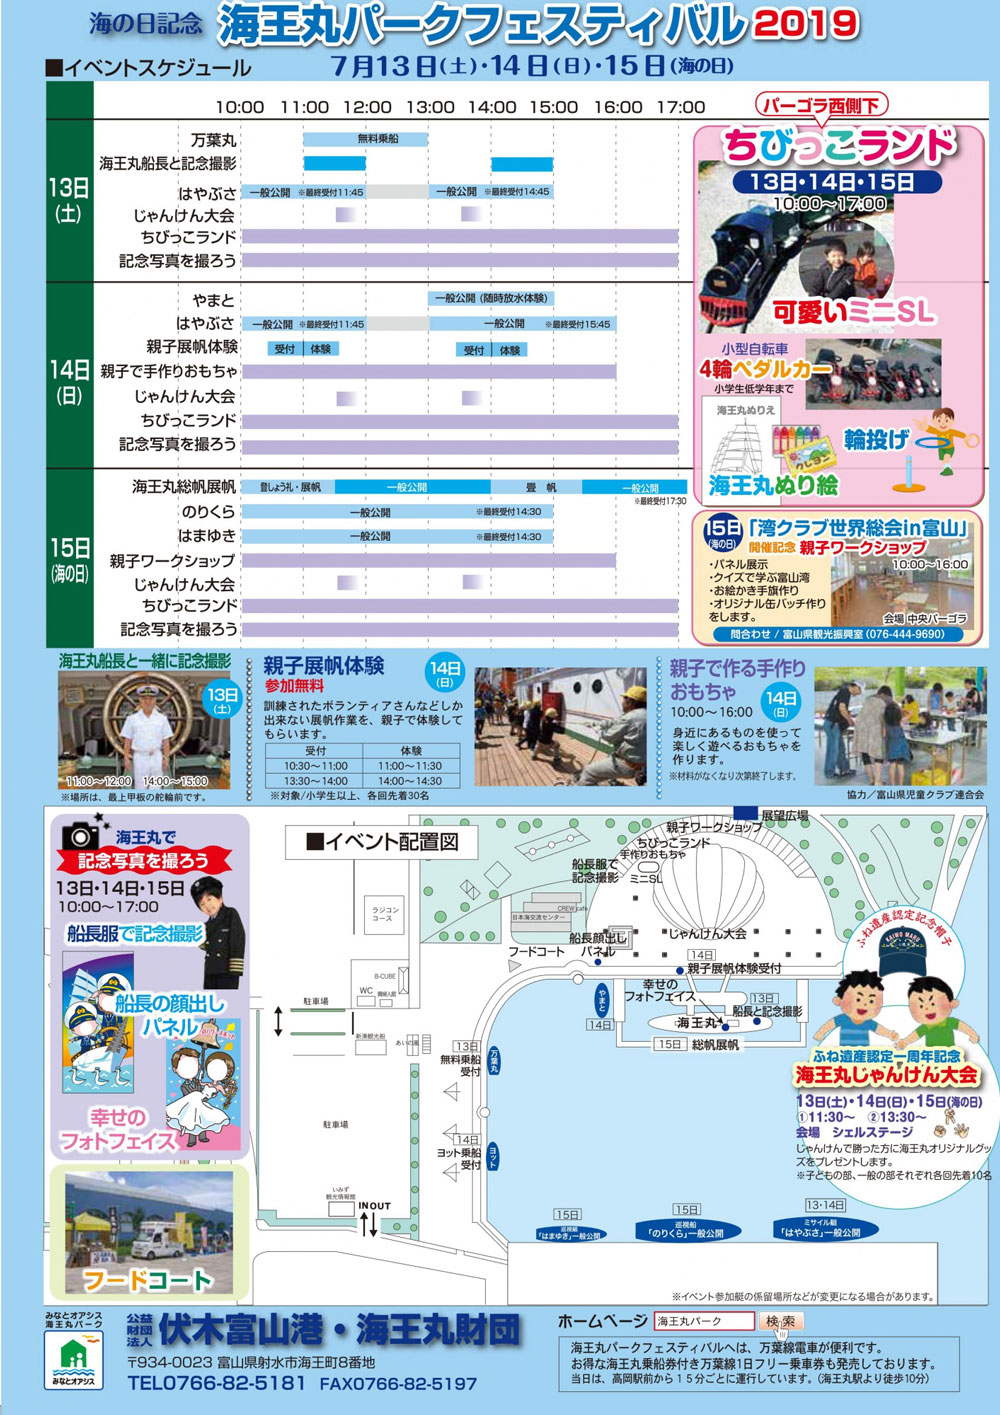 「海王丸パークフェスティバル2019」イベントスケジュール